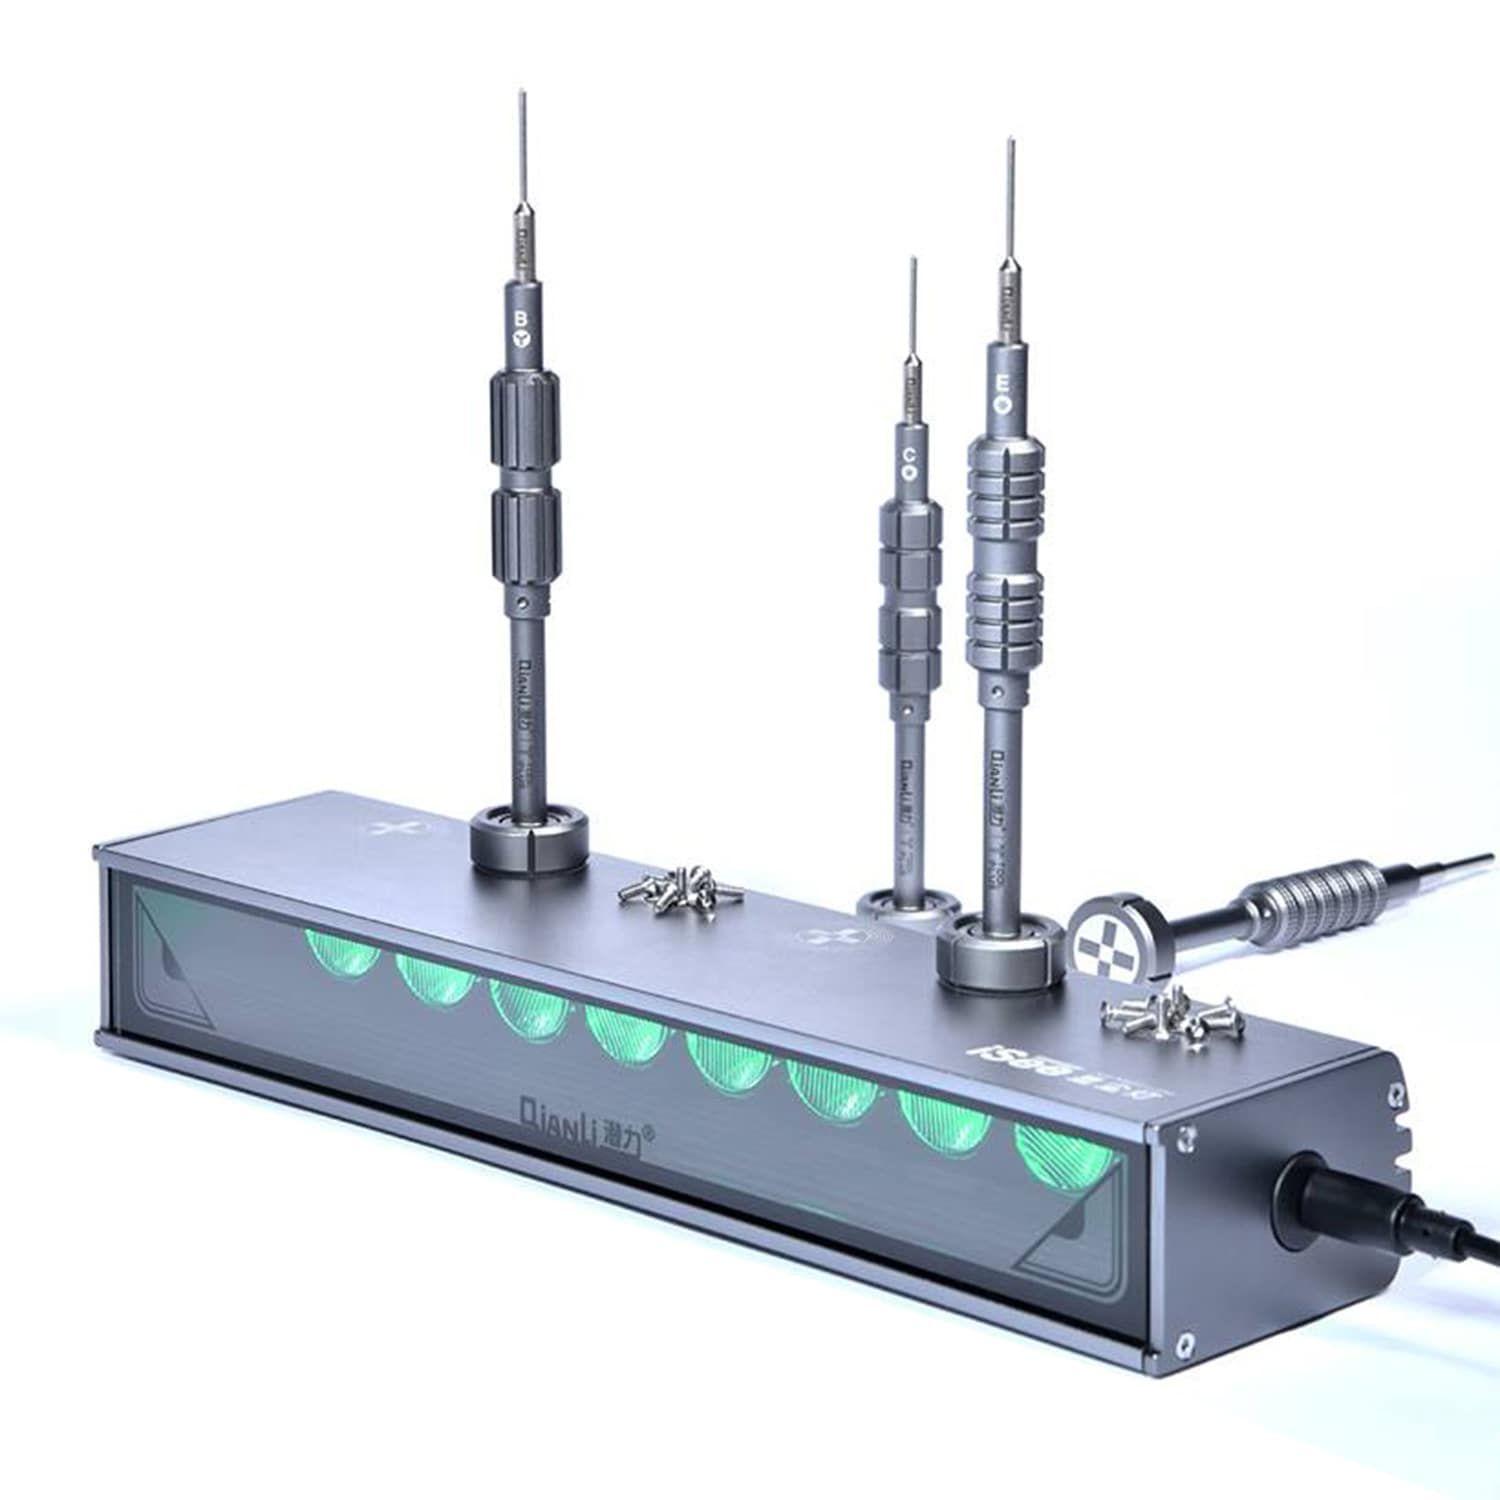 Green Dust Detection Lamp QianLi ToolPlus iSee